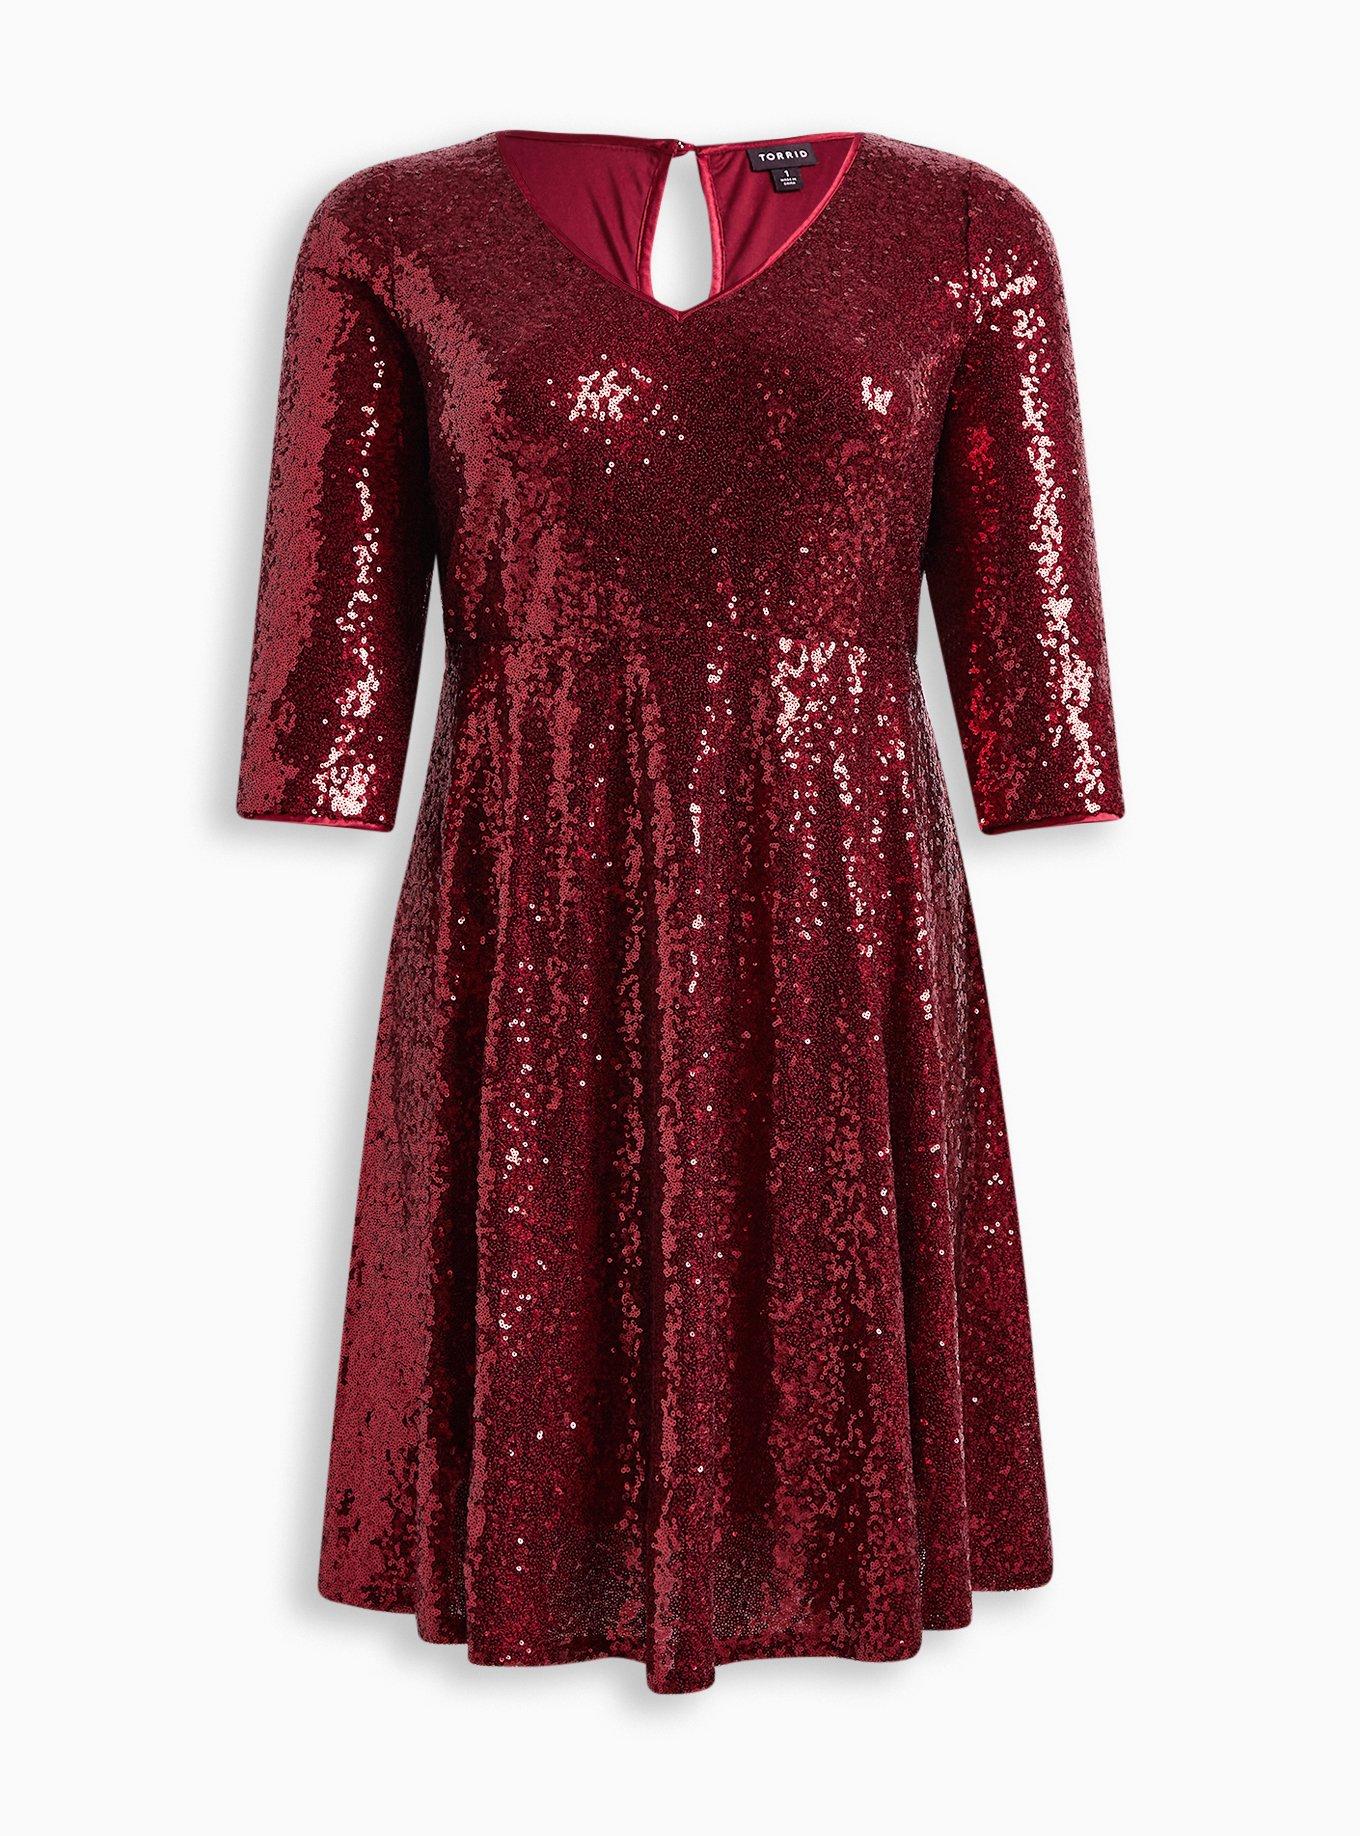 torrid, Dresses, Brand New Red Torrid Festi Dress Size 2